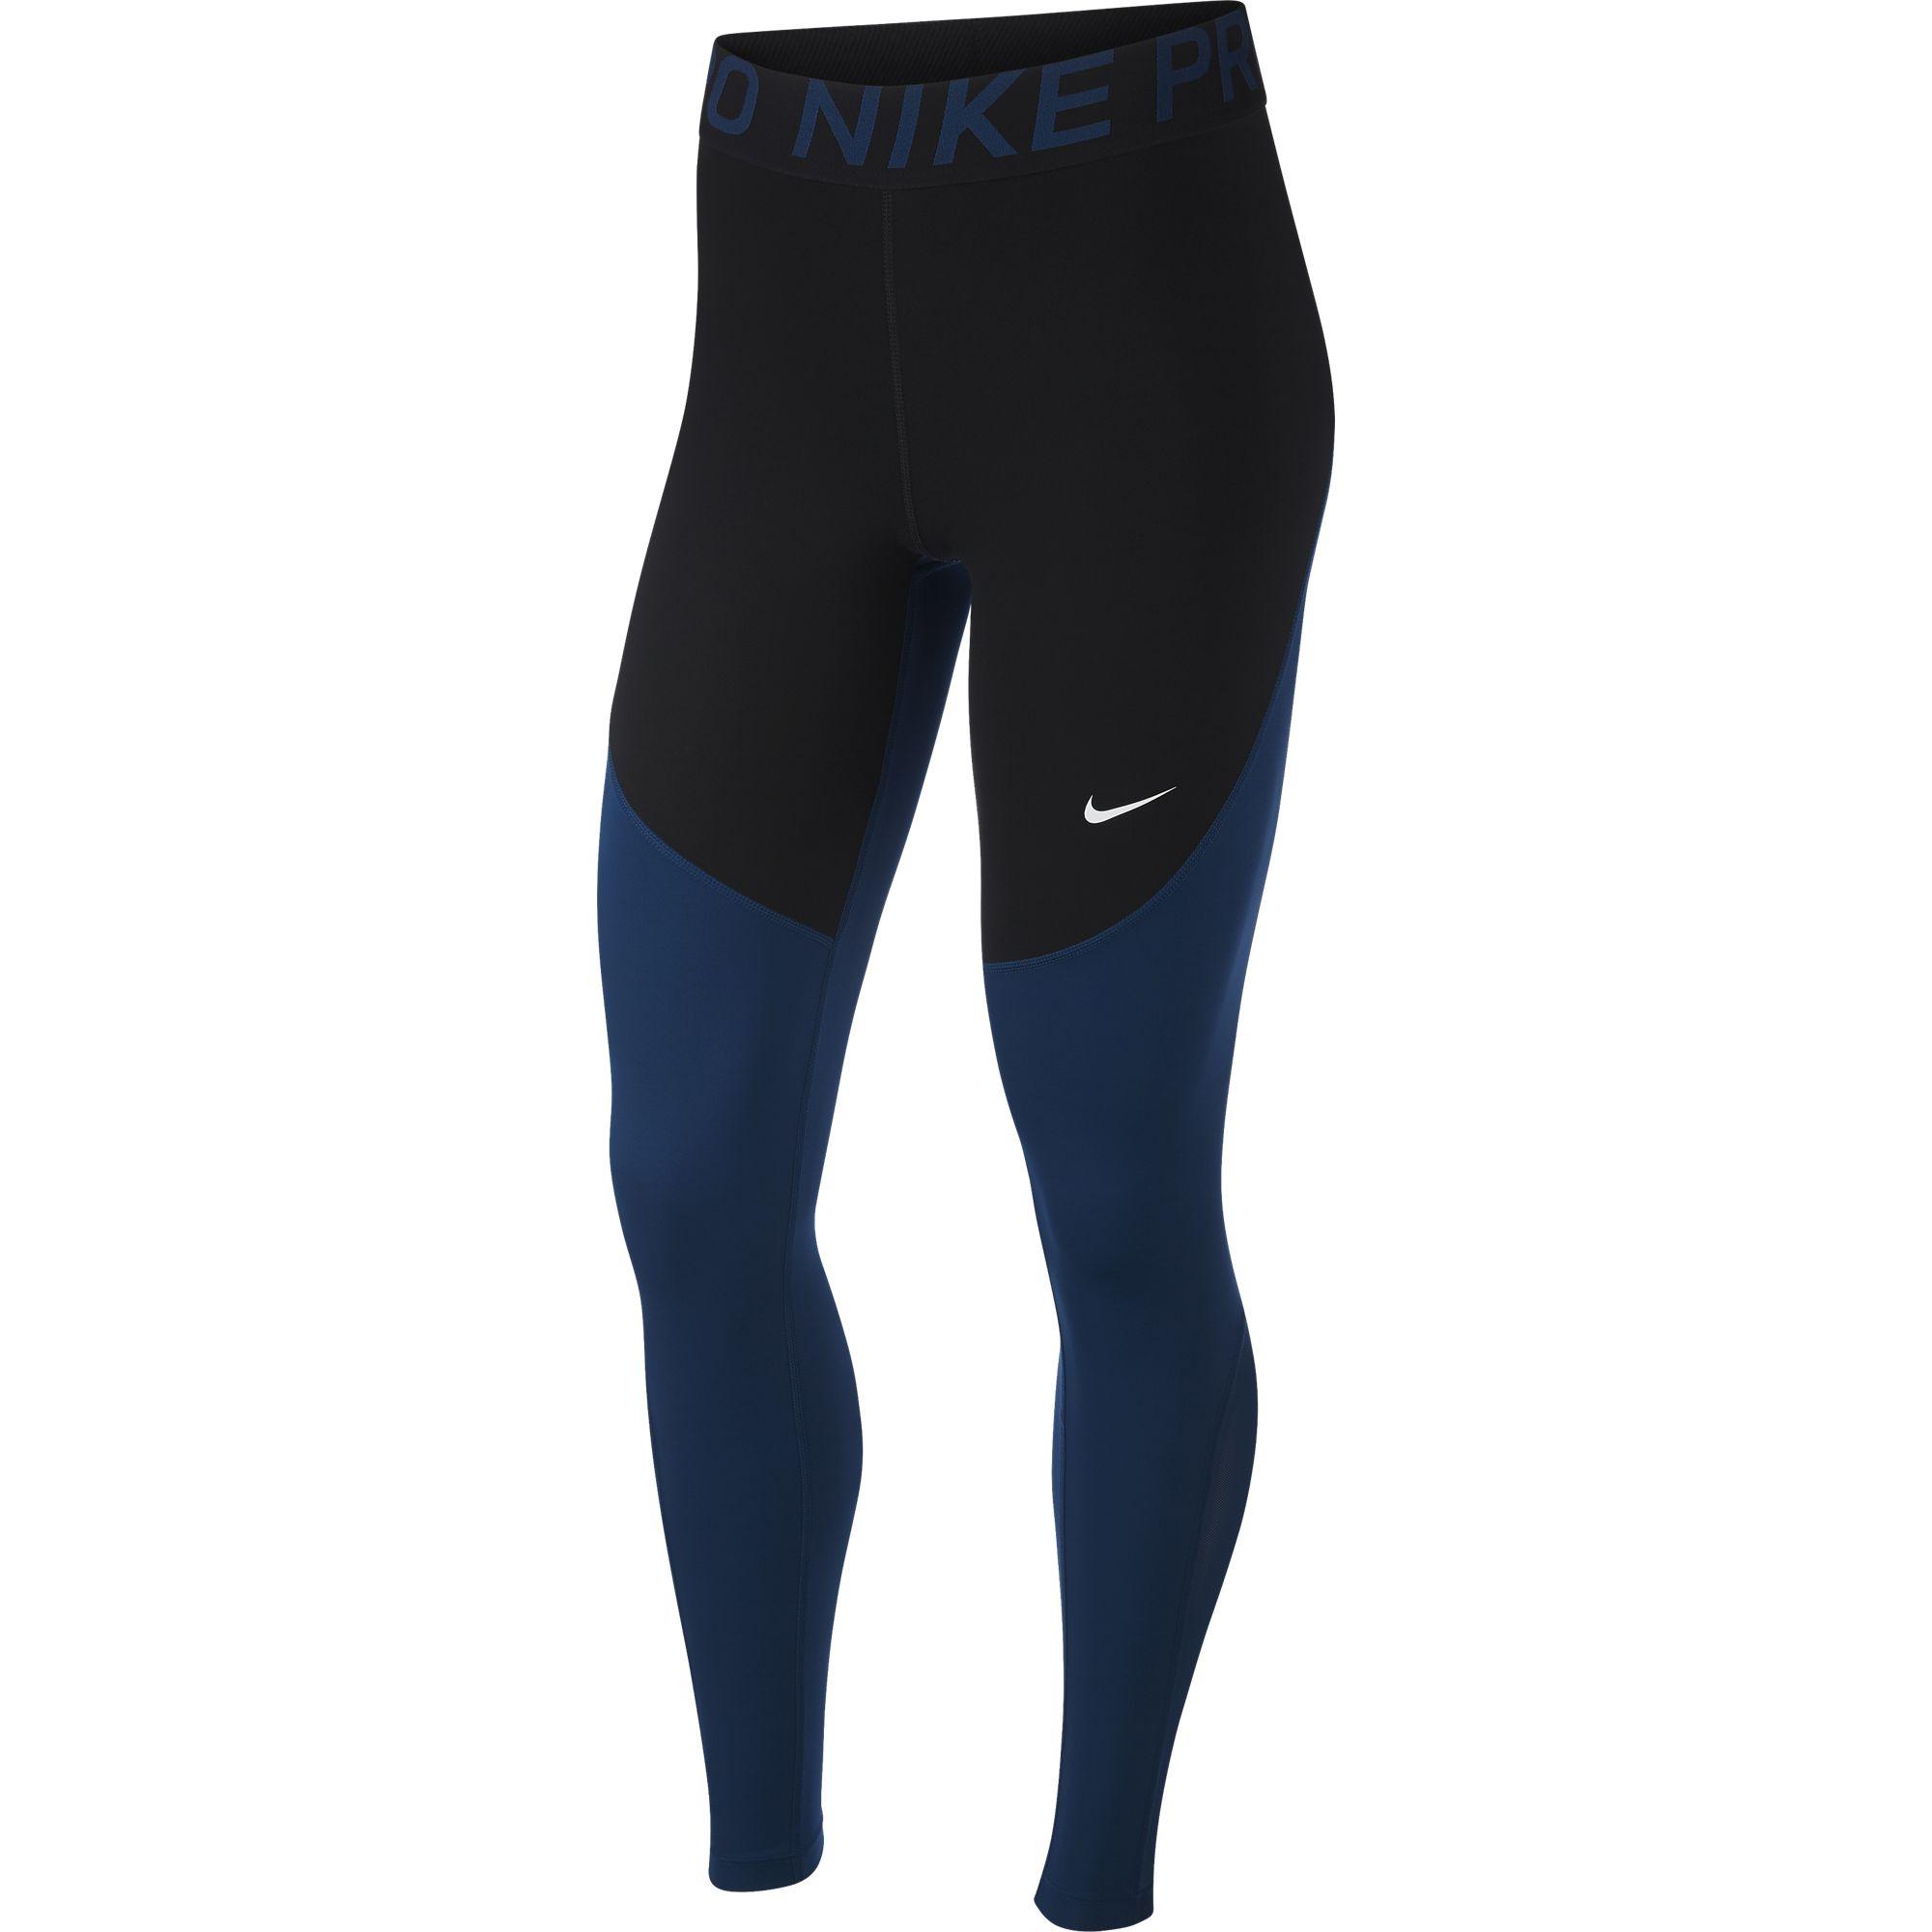 Nike Womens Pro Tights - Valerian Blue/Black - Tennisnuts.com